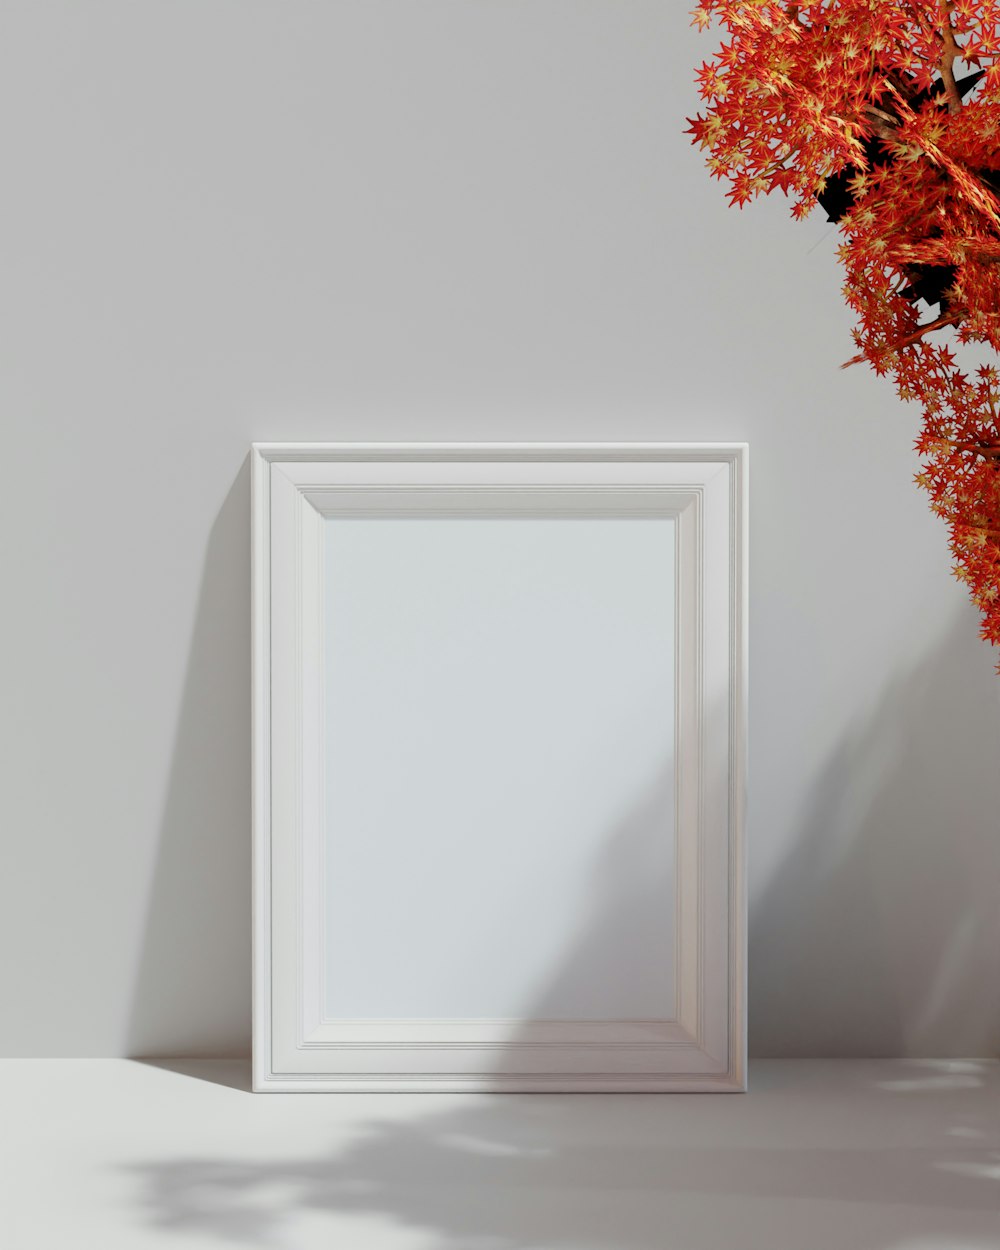 Un marco de fotos blanco sentado junto a un jarrón de flores